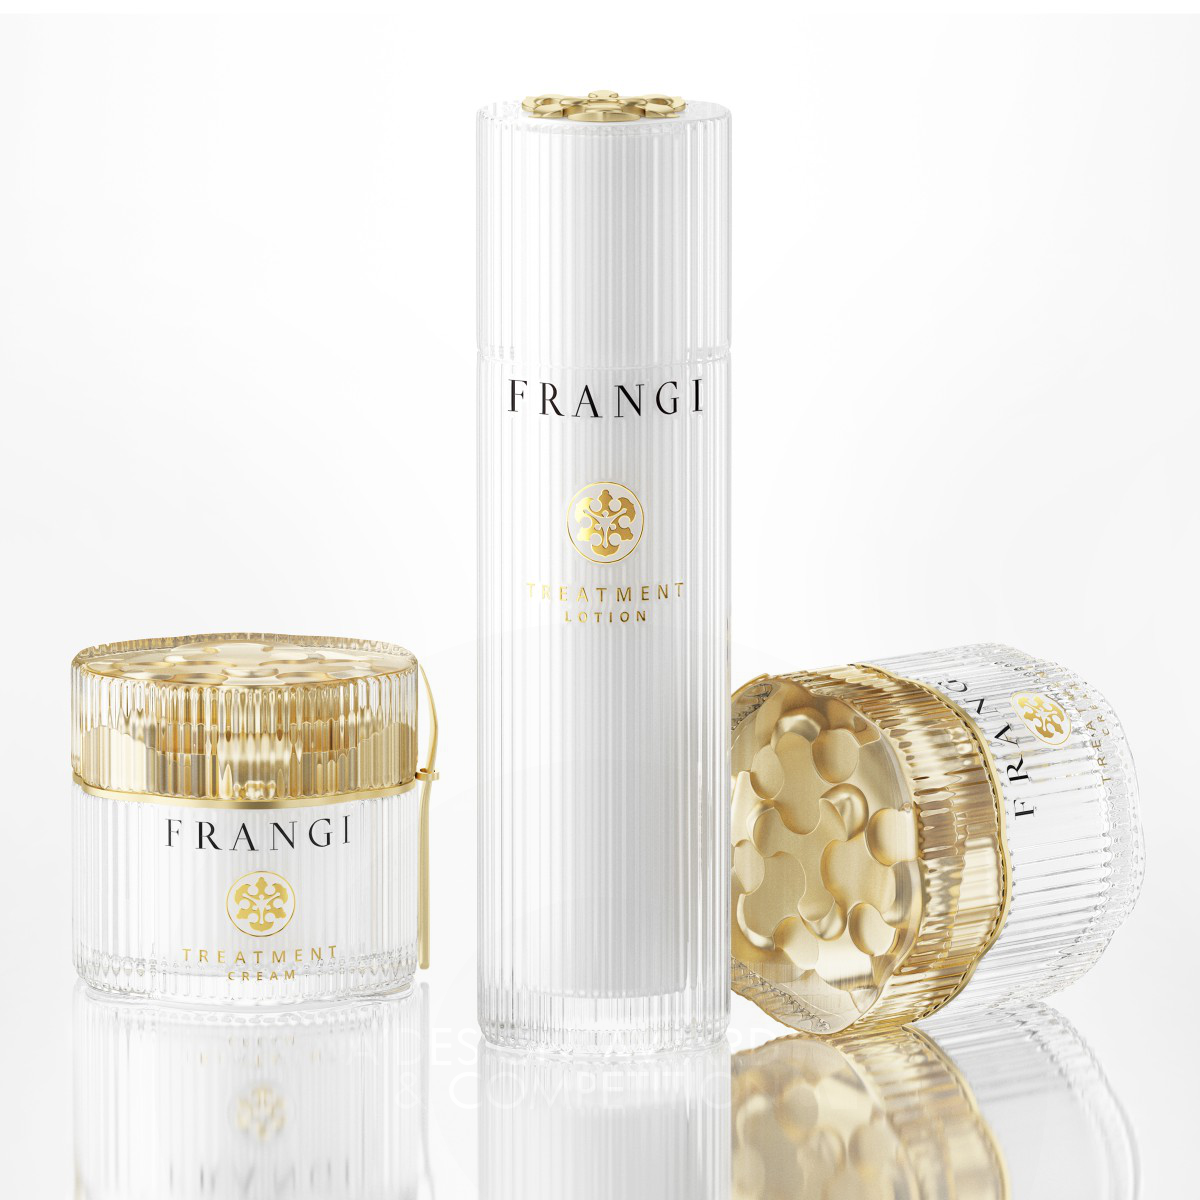 Frangi Premium